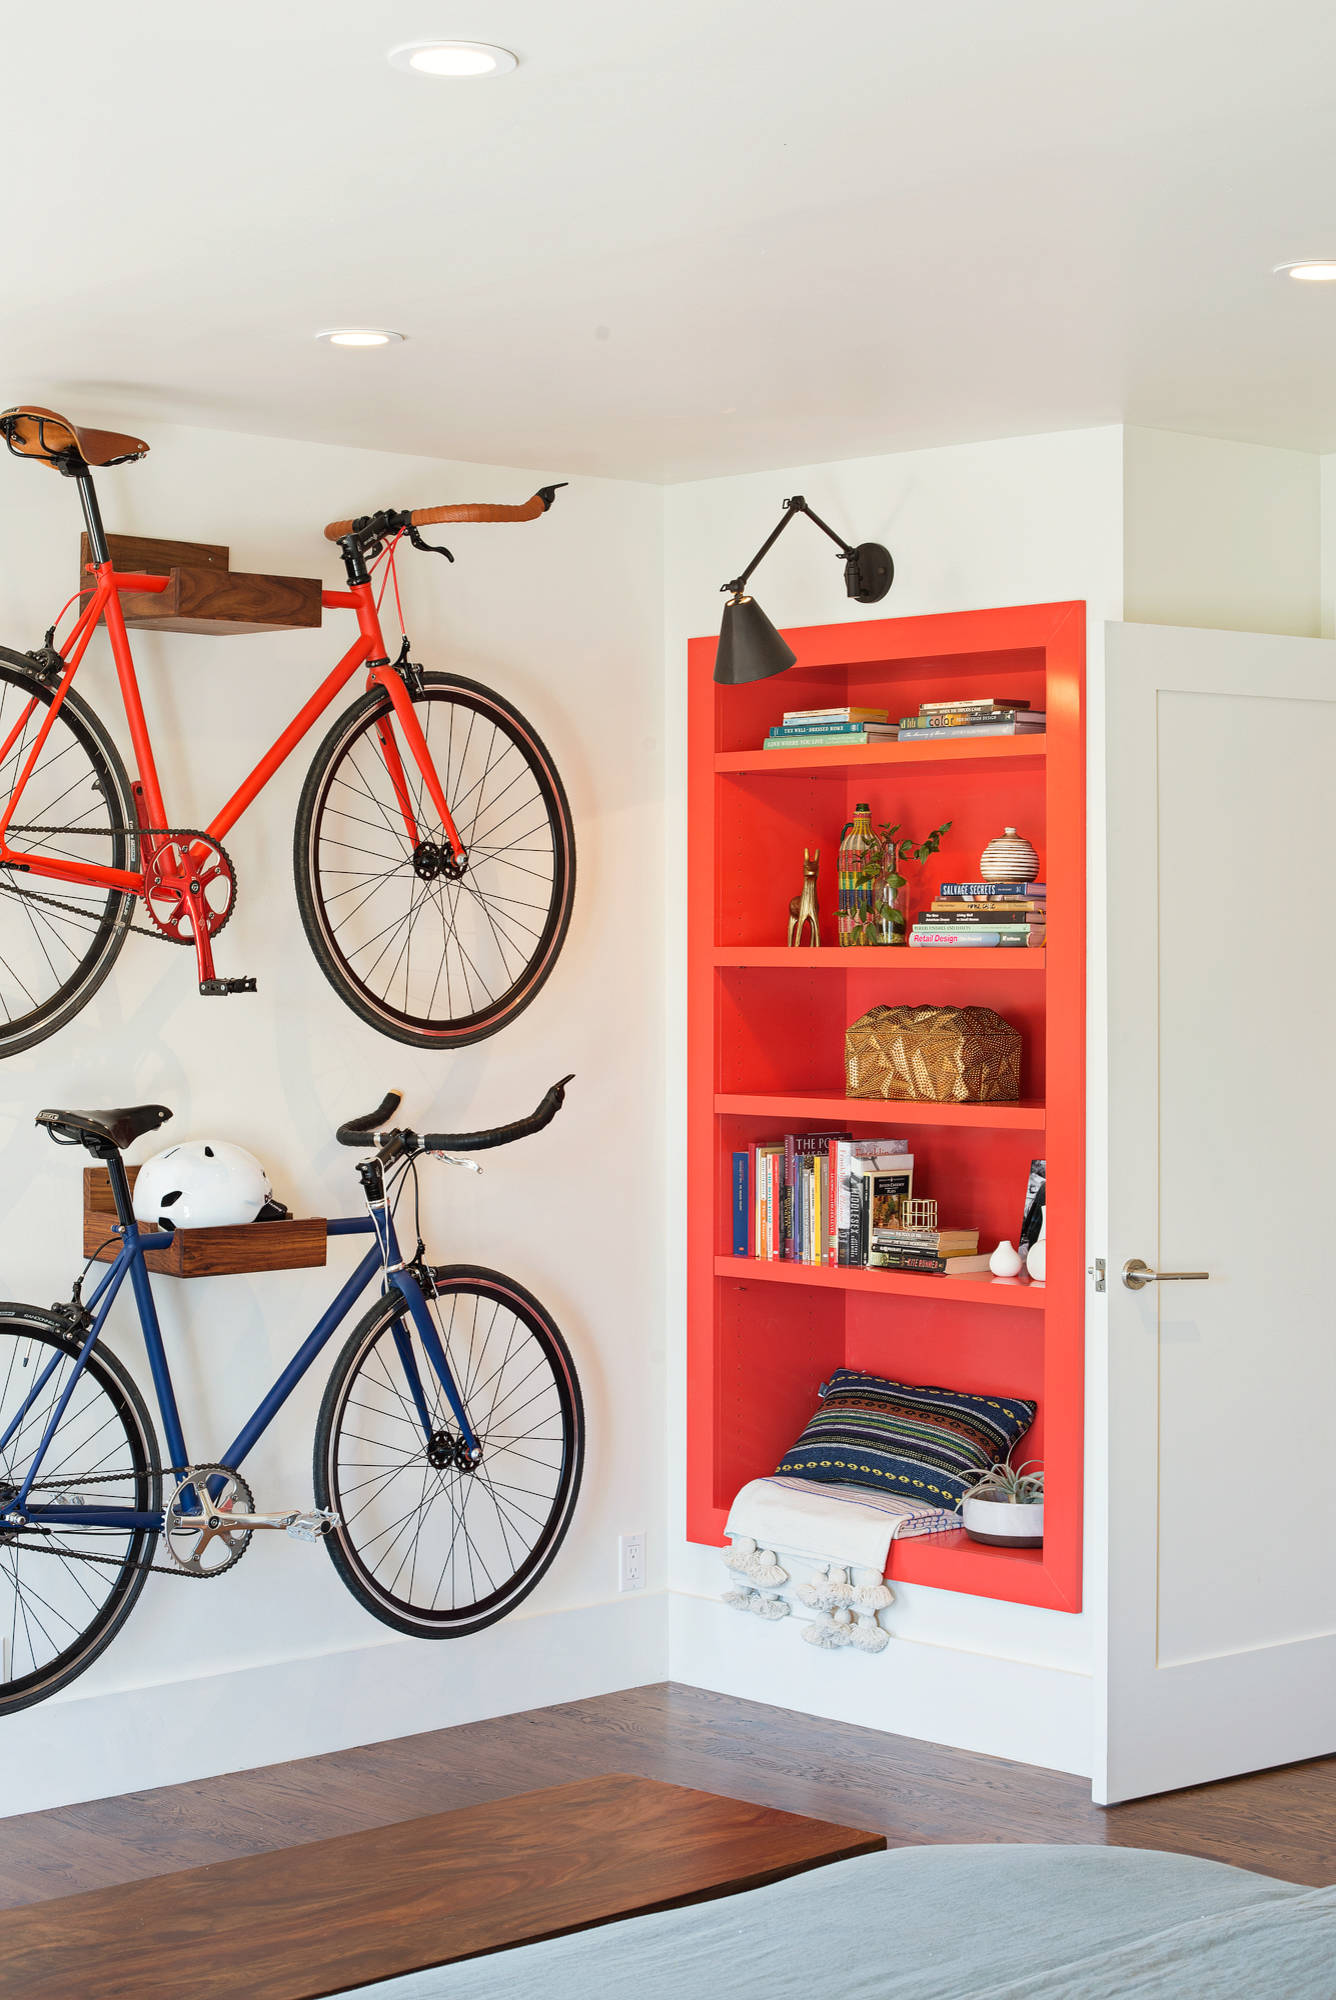 Велосипед в интерьере. Место для хранения велосипеда. Компактное хранение велосипедов. Велосипед на стене в интерьере.